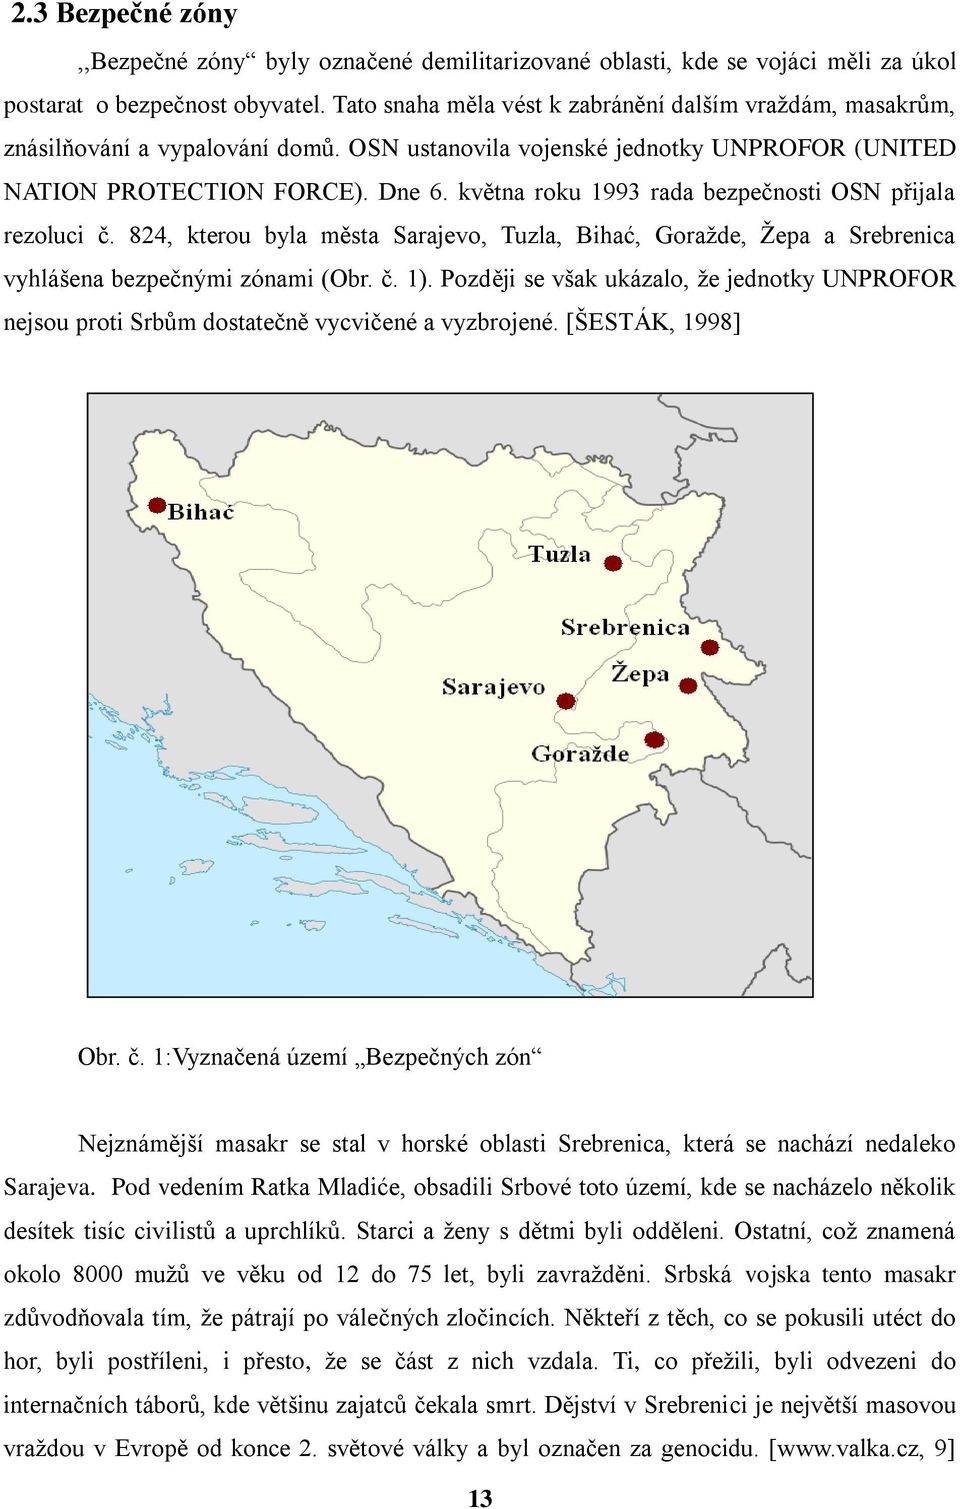 května roku 1993 rada bezpečnosti OSN přijala rezoluci č. 824, kterou byla města Sarajevo, Tuzla, Bihać, Goraţde, Ţepa a Srebrenica vyhlášena bezpečnými zónami (Obr. č. 1).